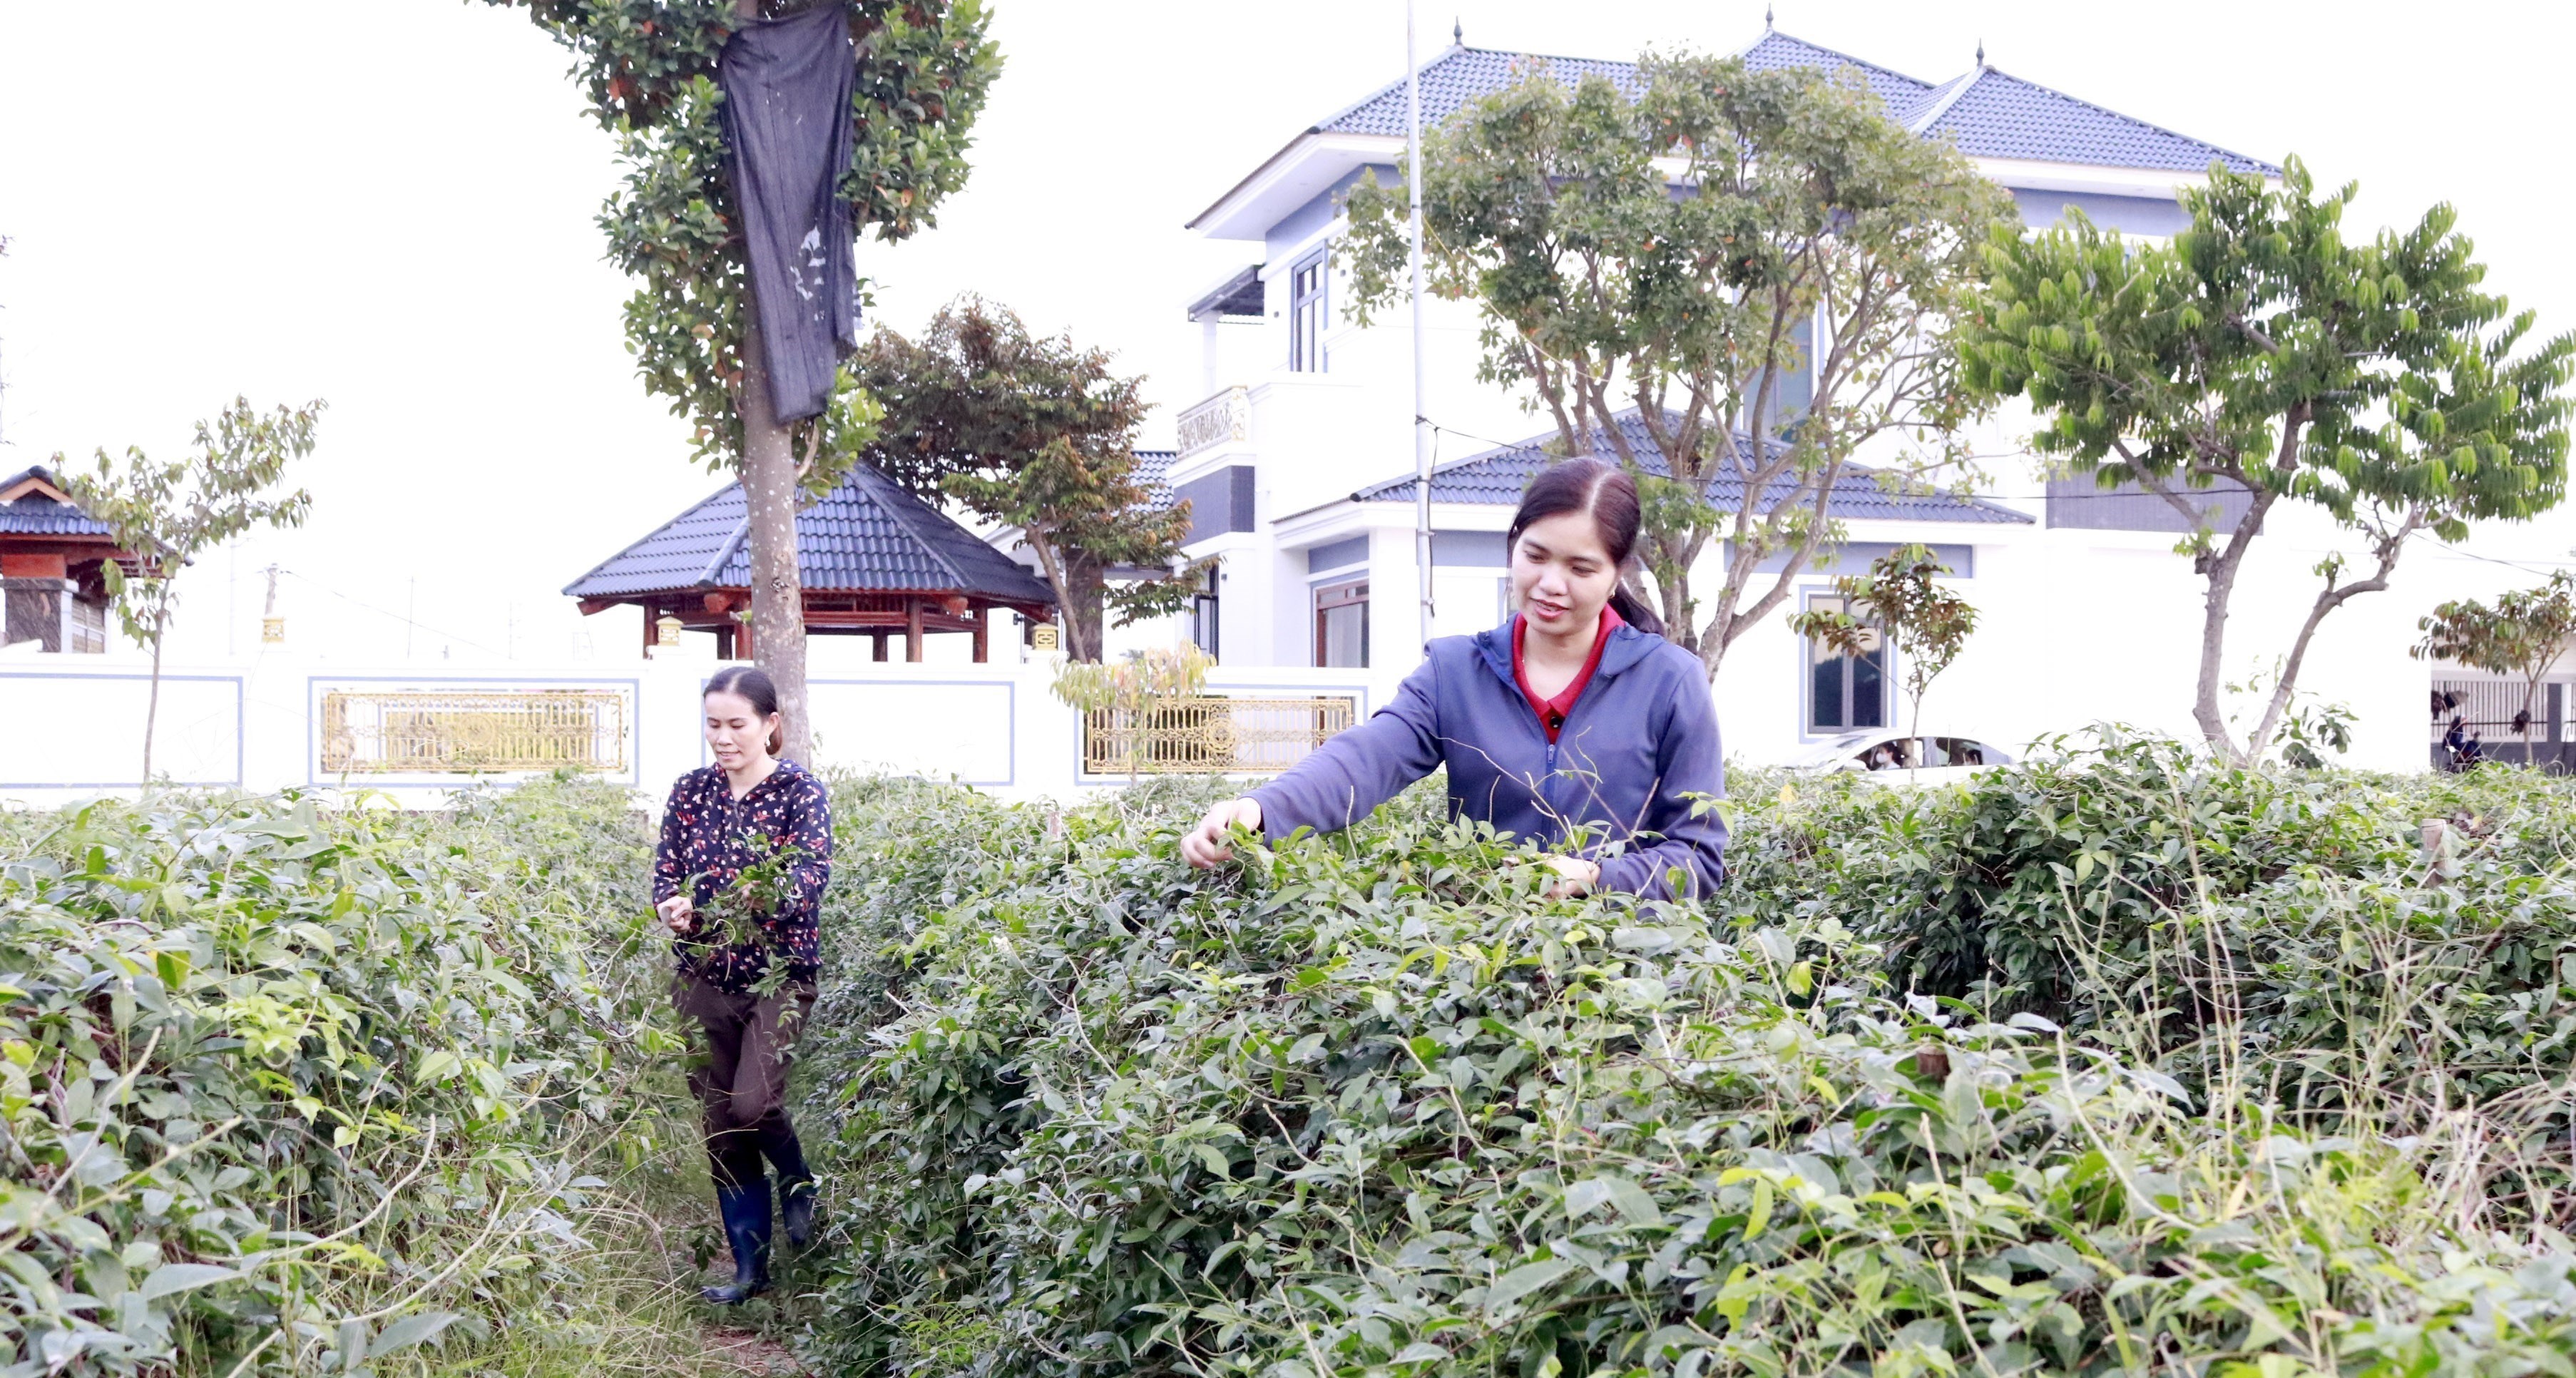 Bắc Giang: Người phụ nữ đưa sản vật tiến Vua thành cây trồng chủ lực